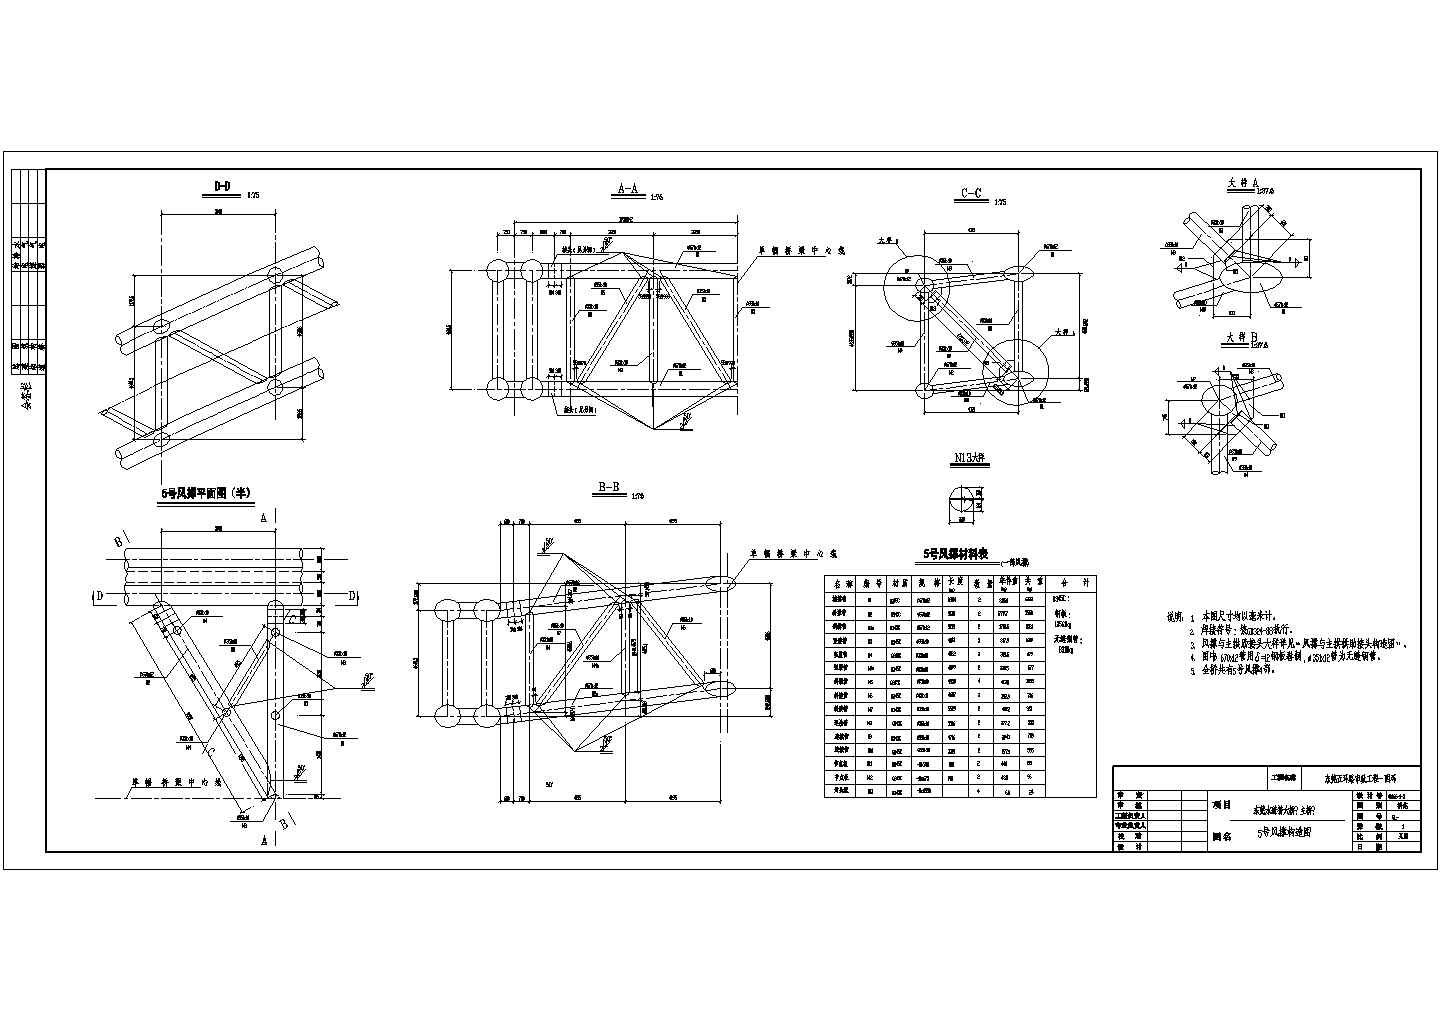 中承式钢管混凝土系杆拱桥施工图50+280+50 CAD图纸